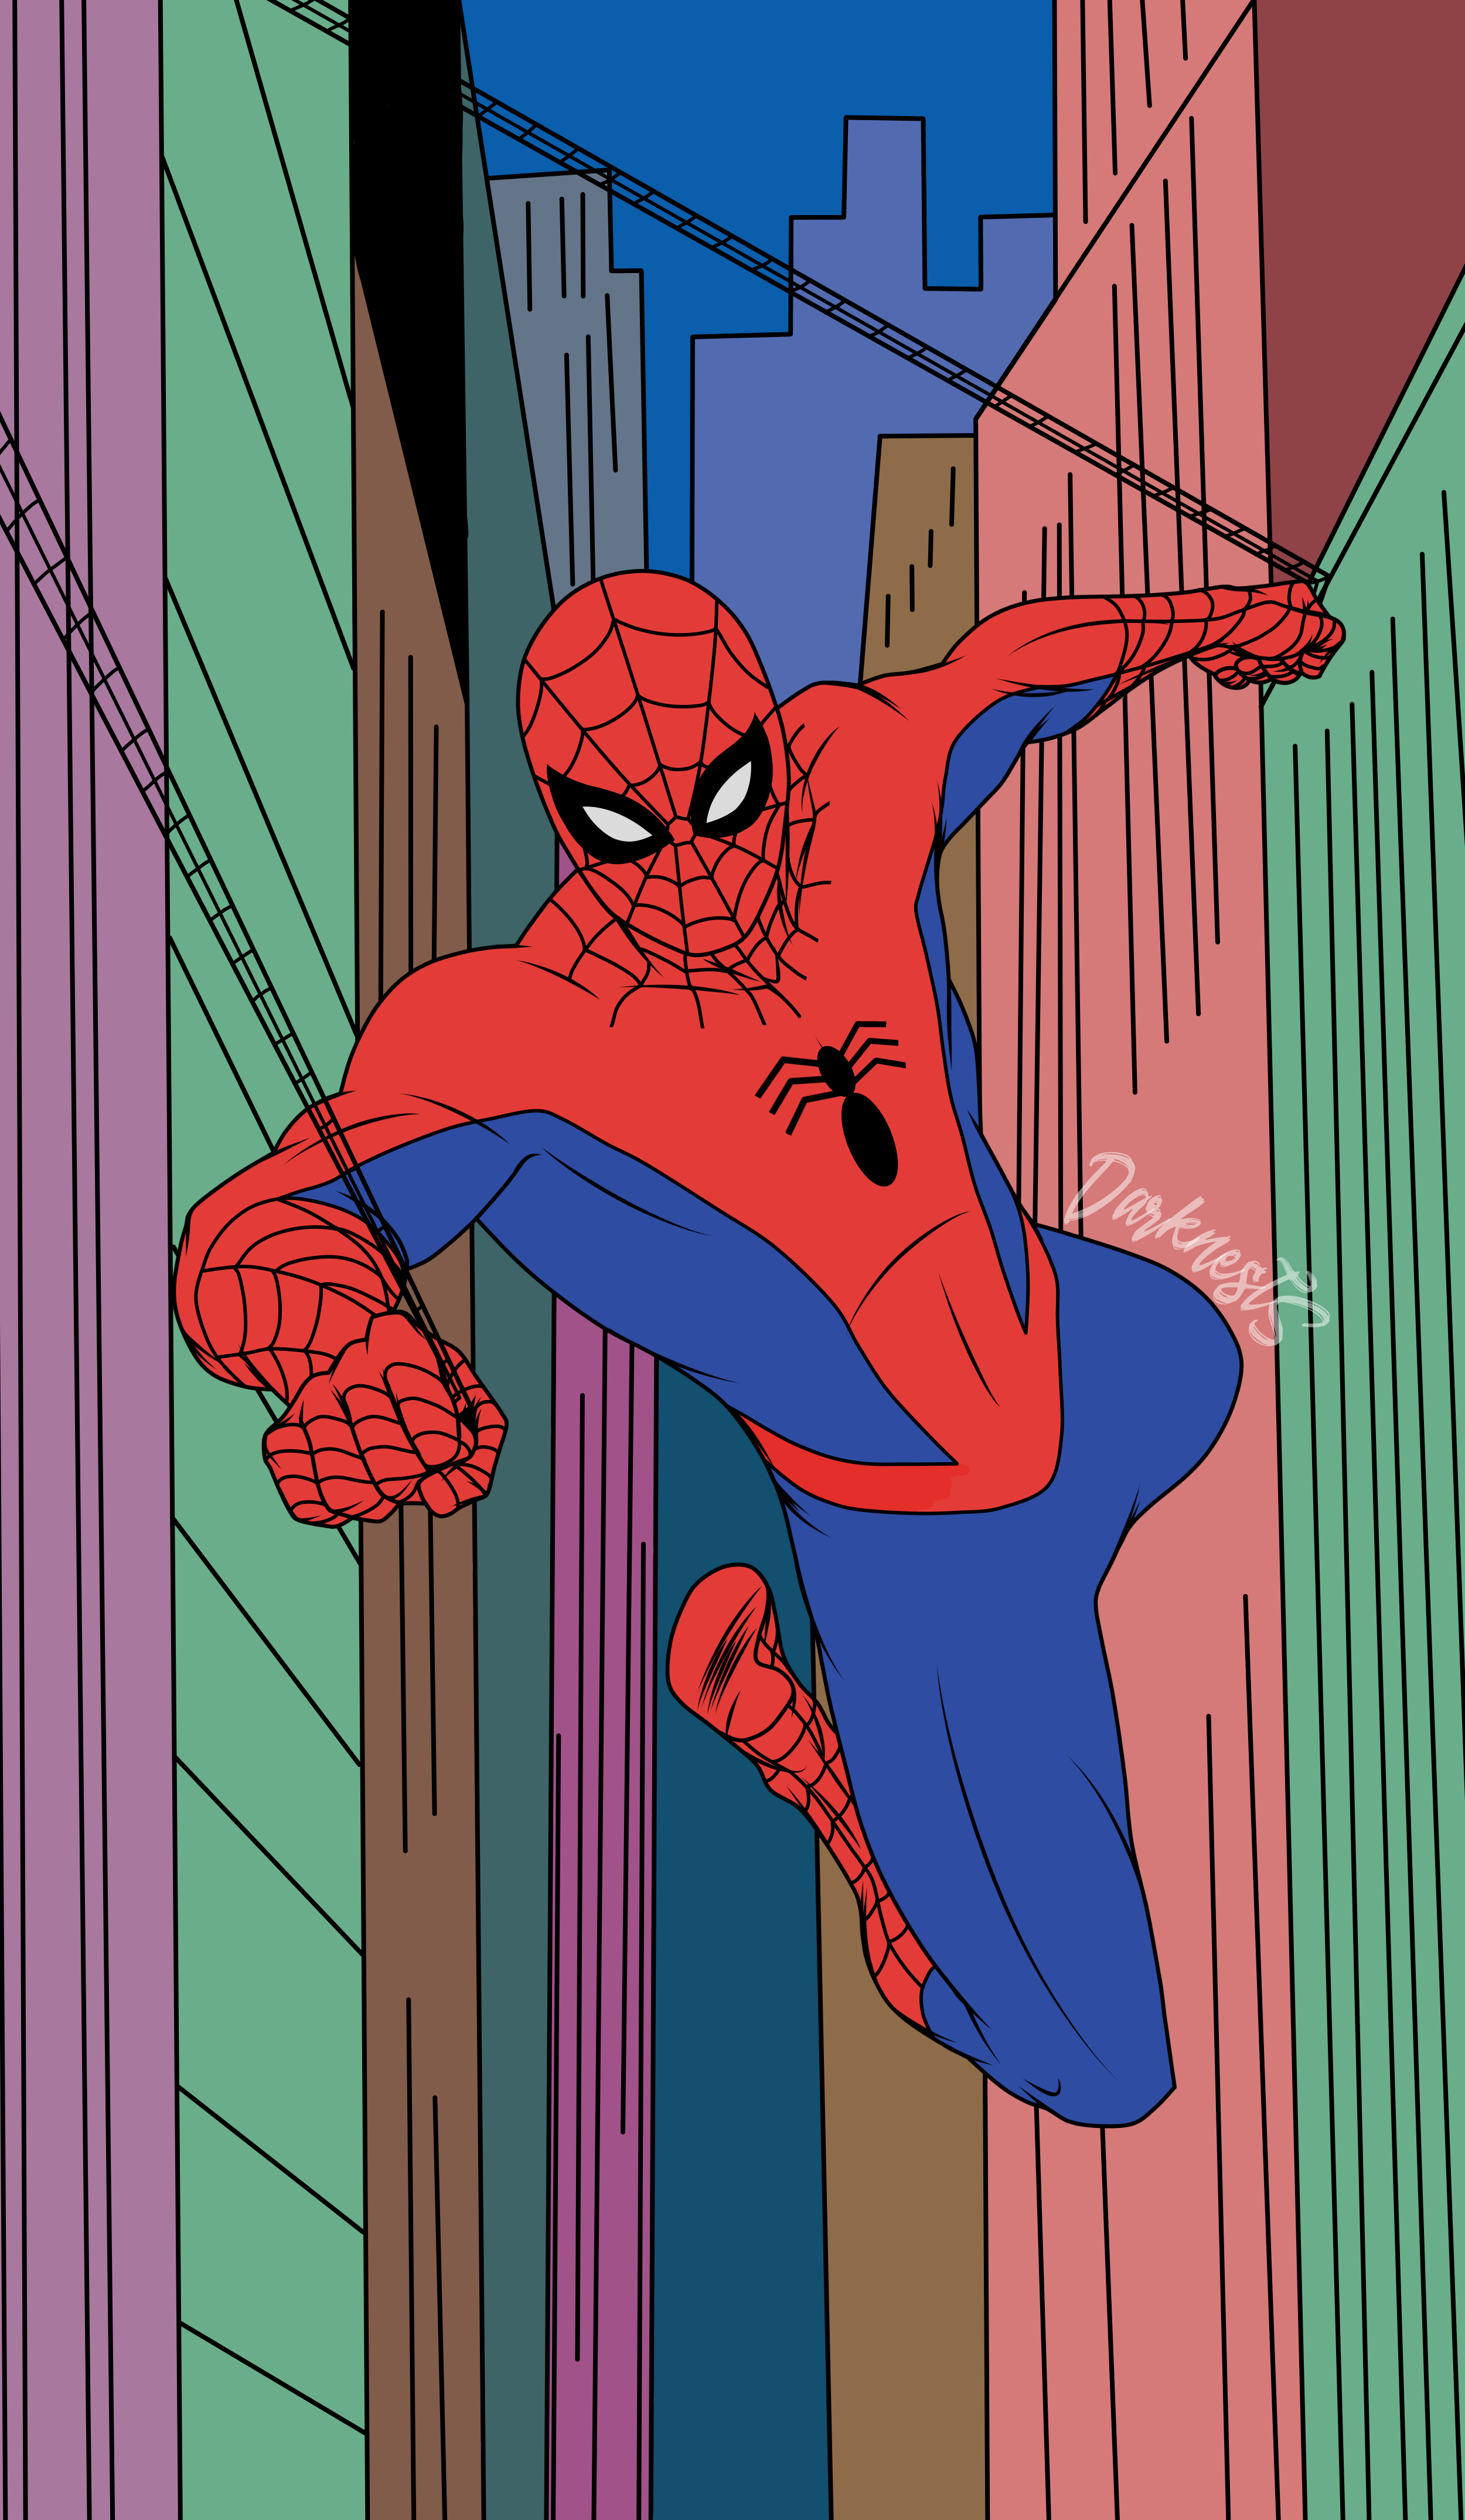 Spider-Man (1967 Style) by DarknestSpawn on DeviantArt